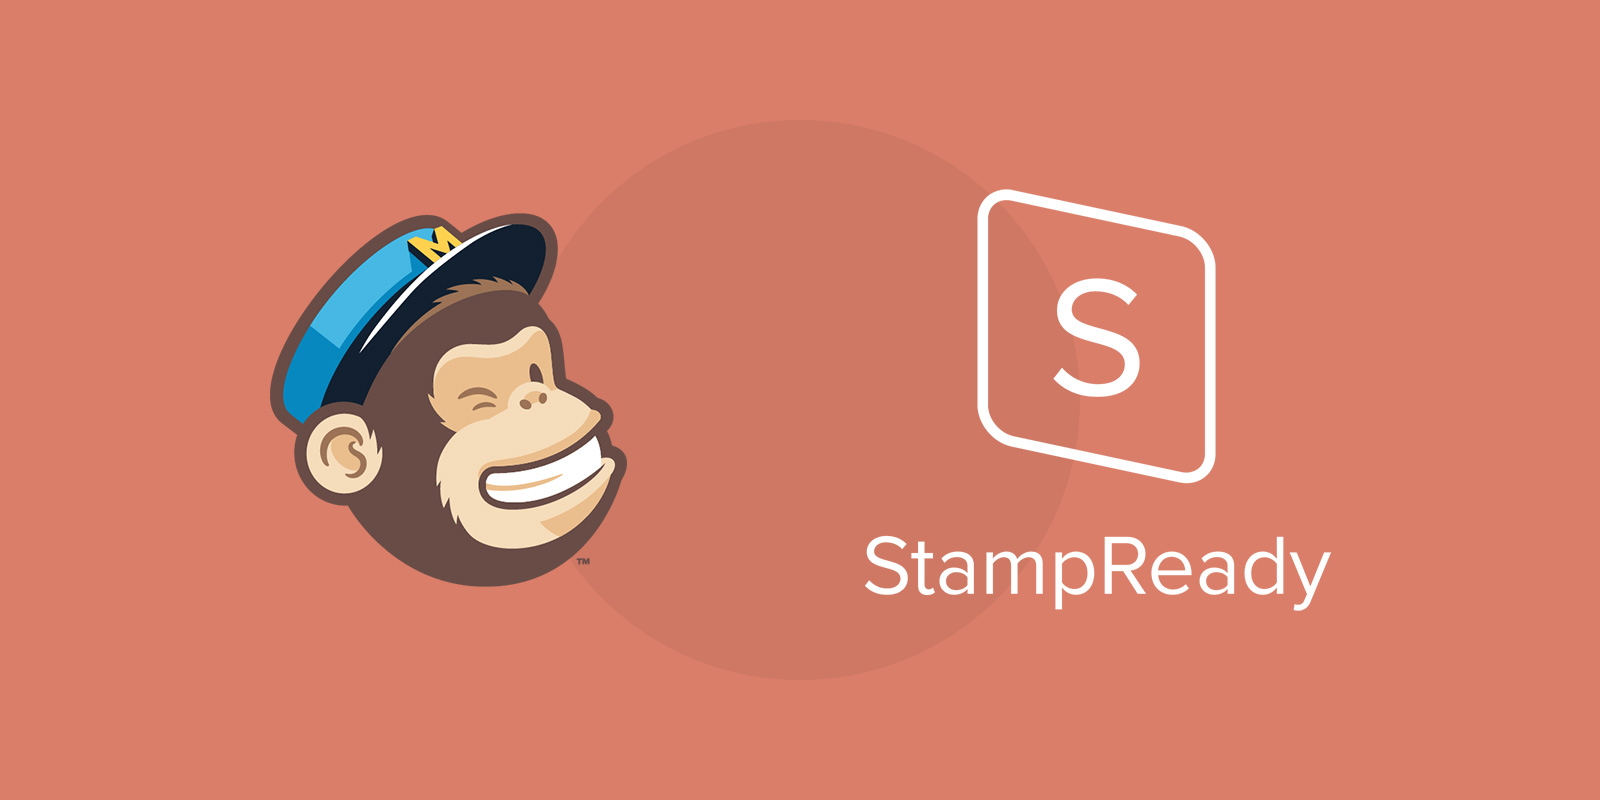 MailChimp vs Stampready